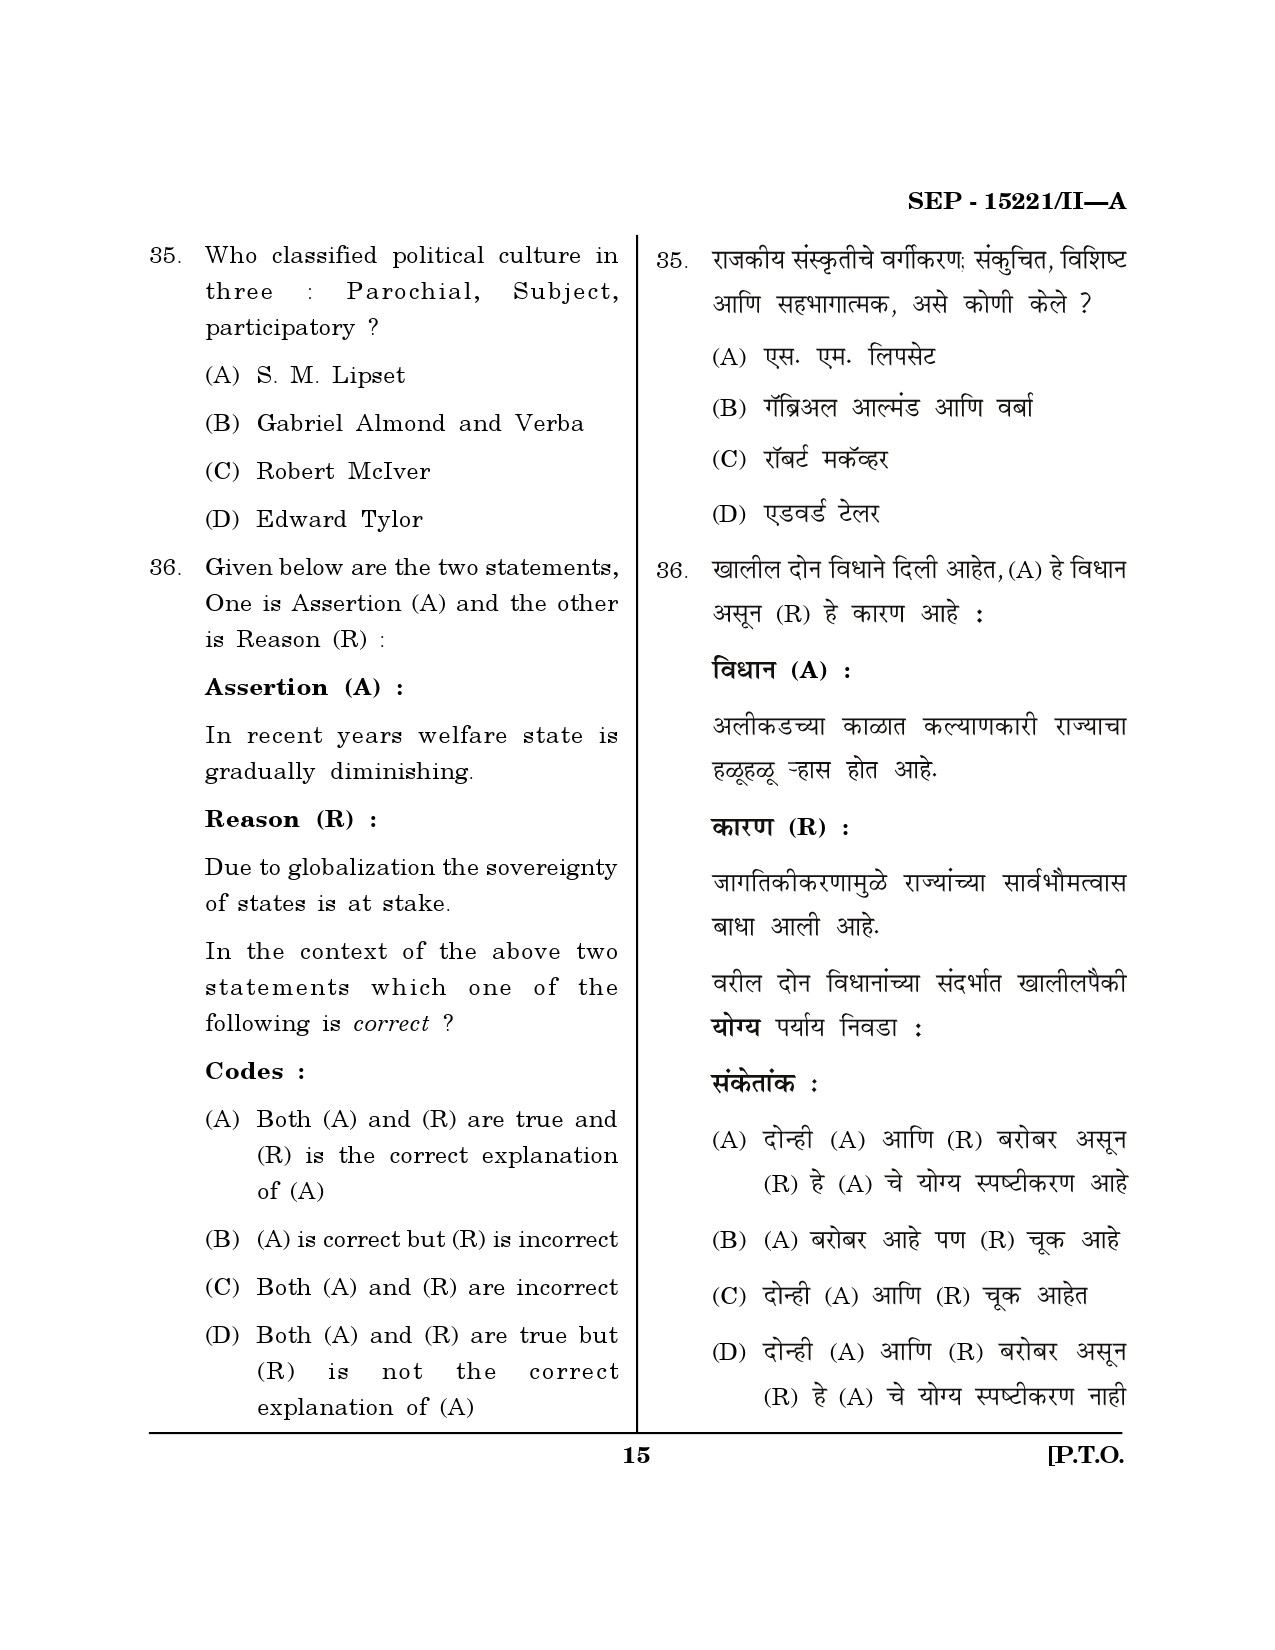 Maharashtra SET Political Science Exam Question Paper September 2021 14